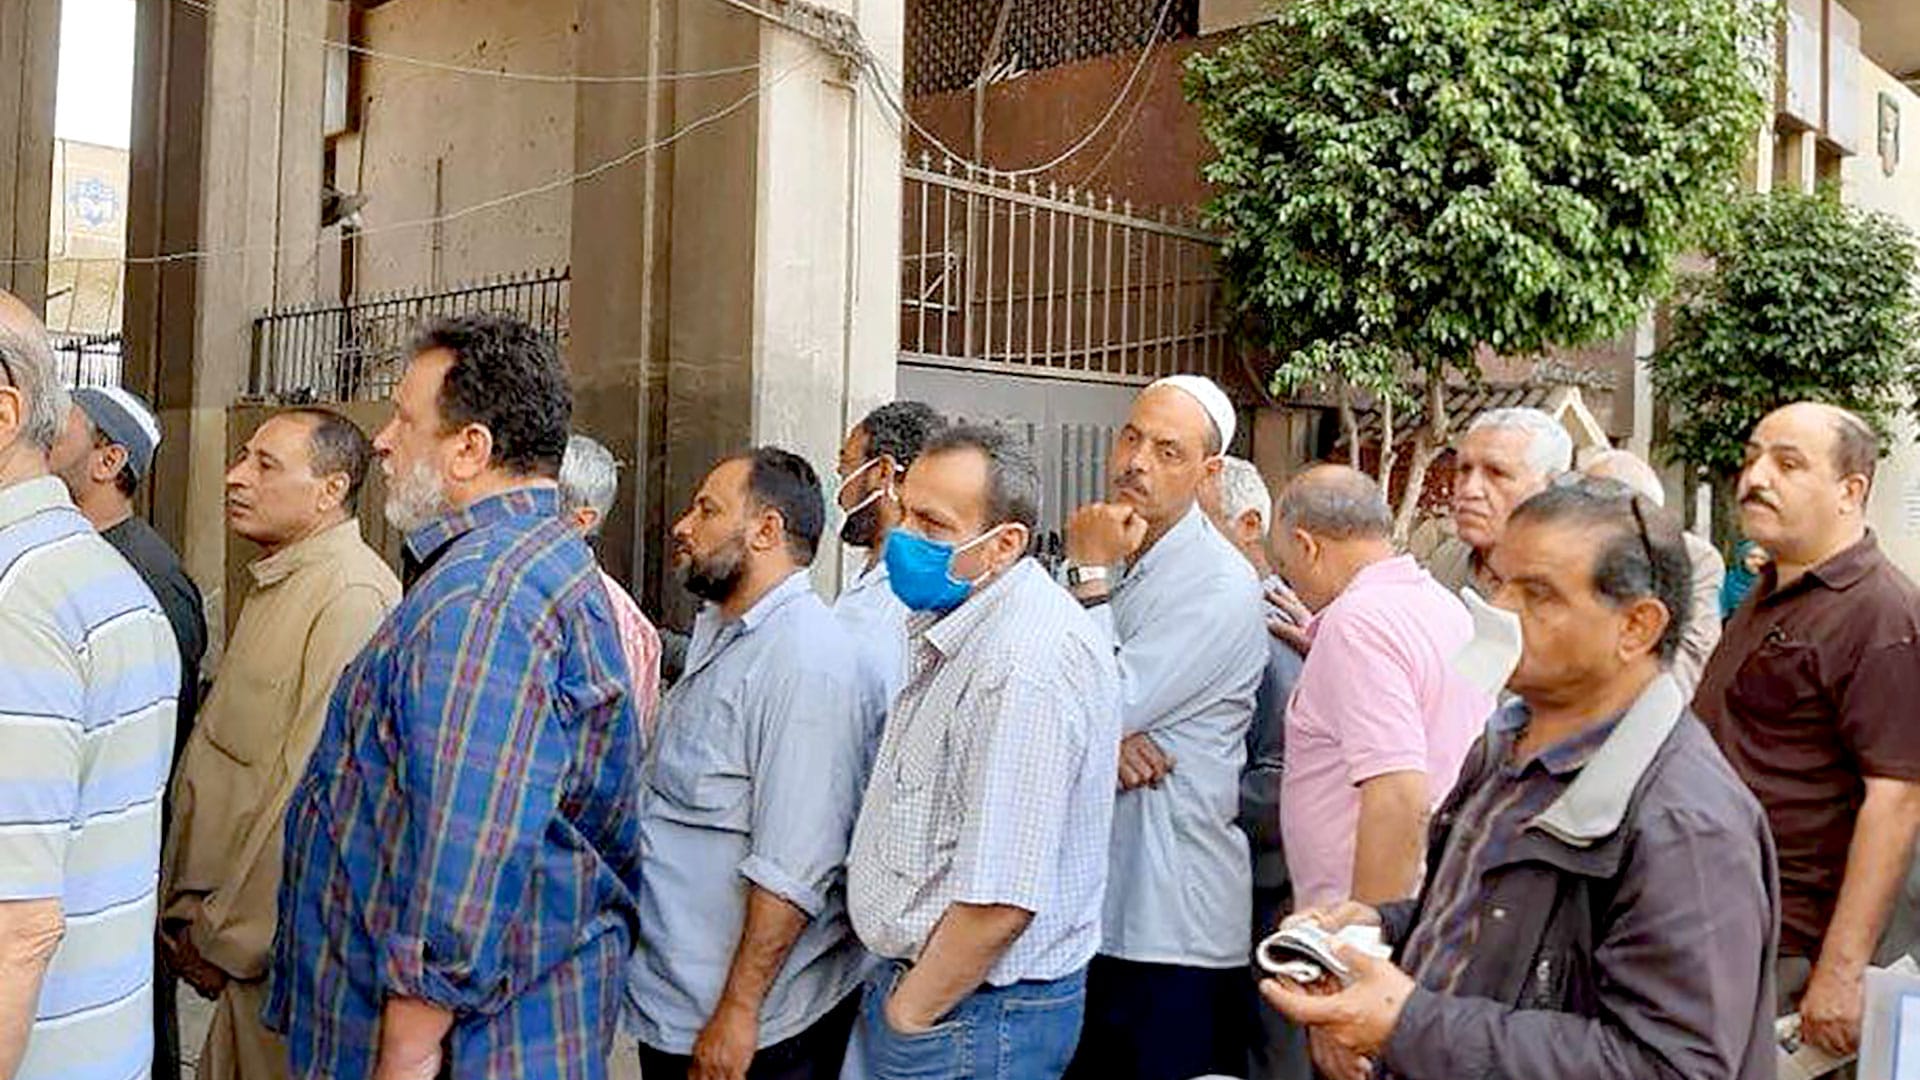 مصر تبدأ تطبيق قانون فصل الإخوان watanserb.com